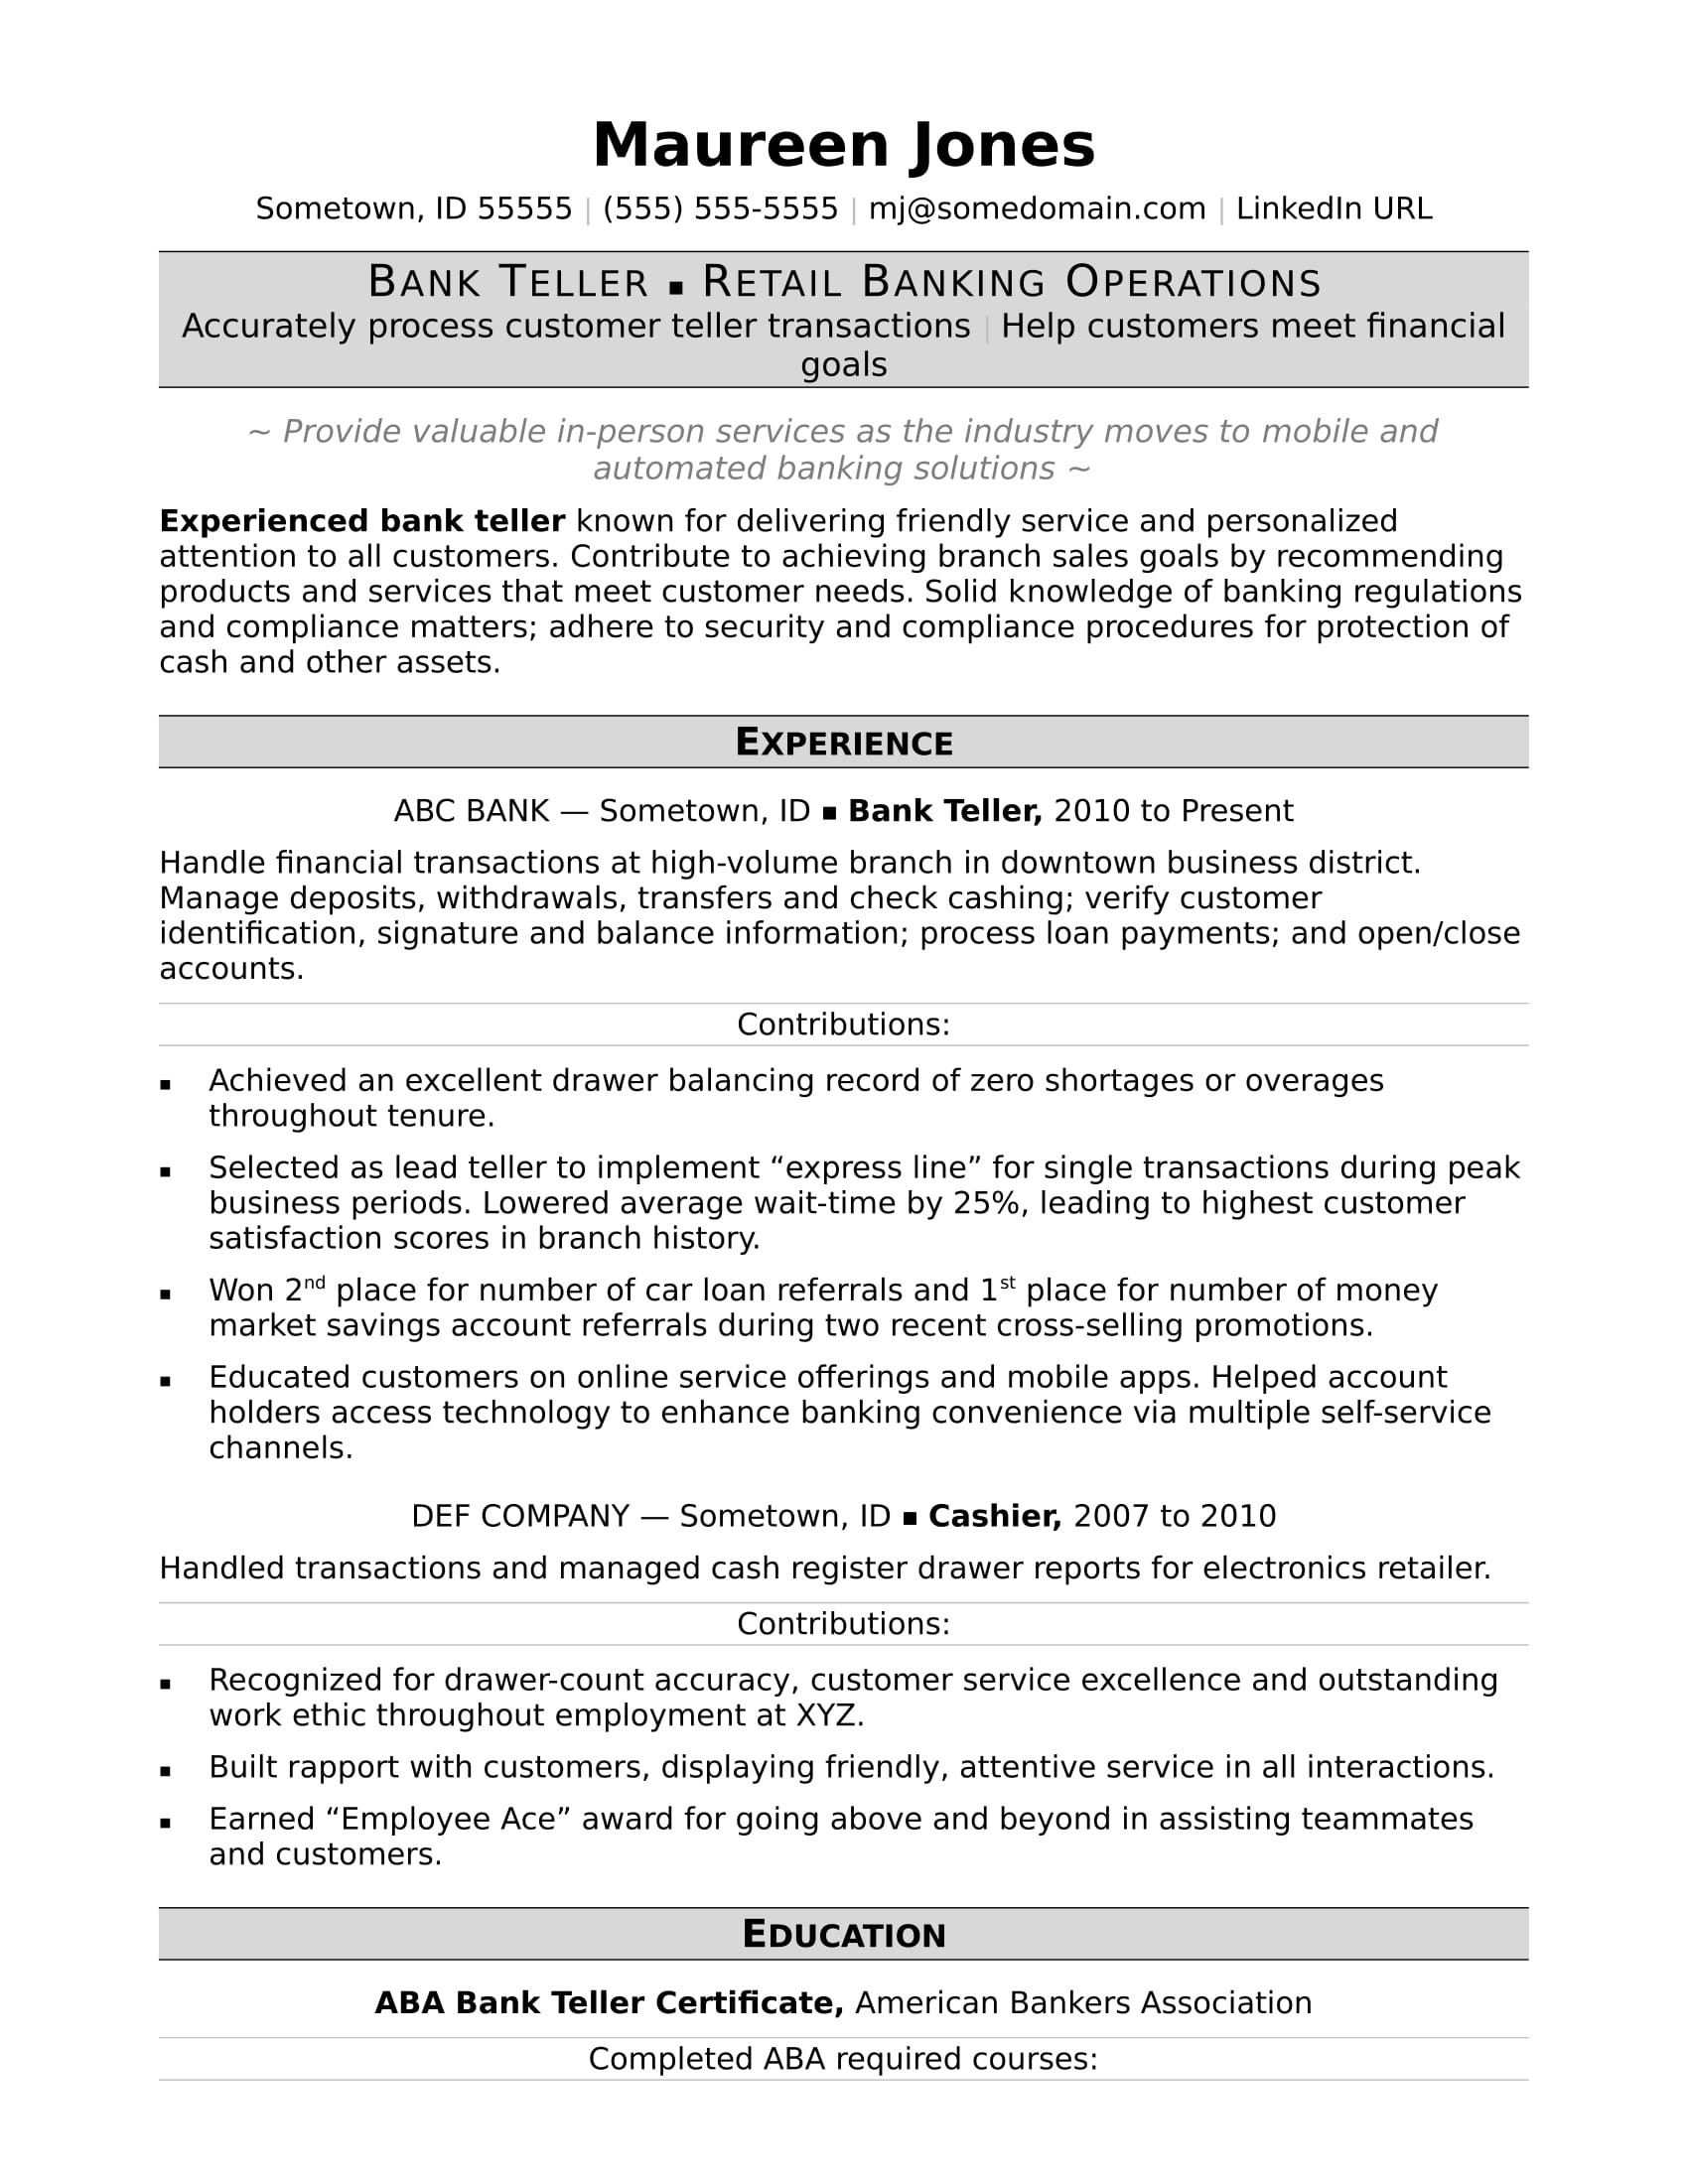 Sample Resume Objectives for Bank Teller Bank Teller Resume Sample Monster.com